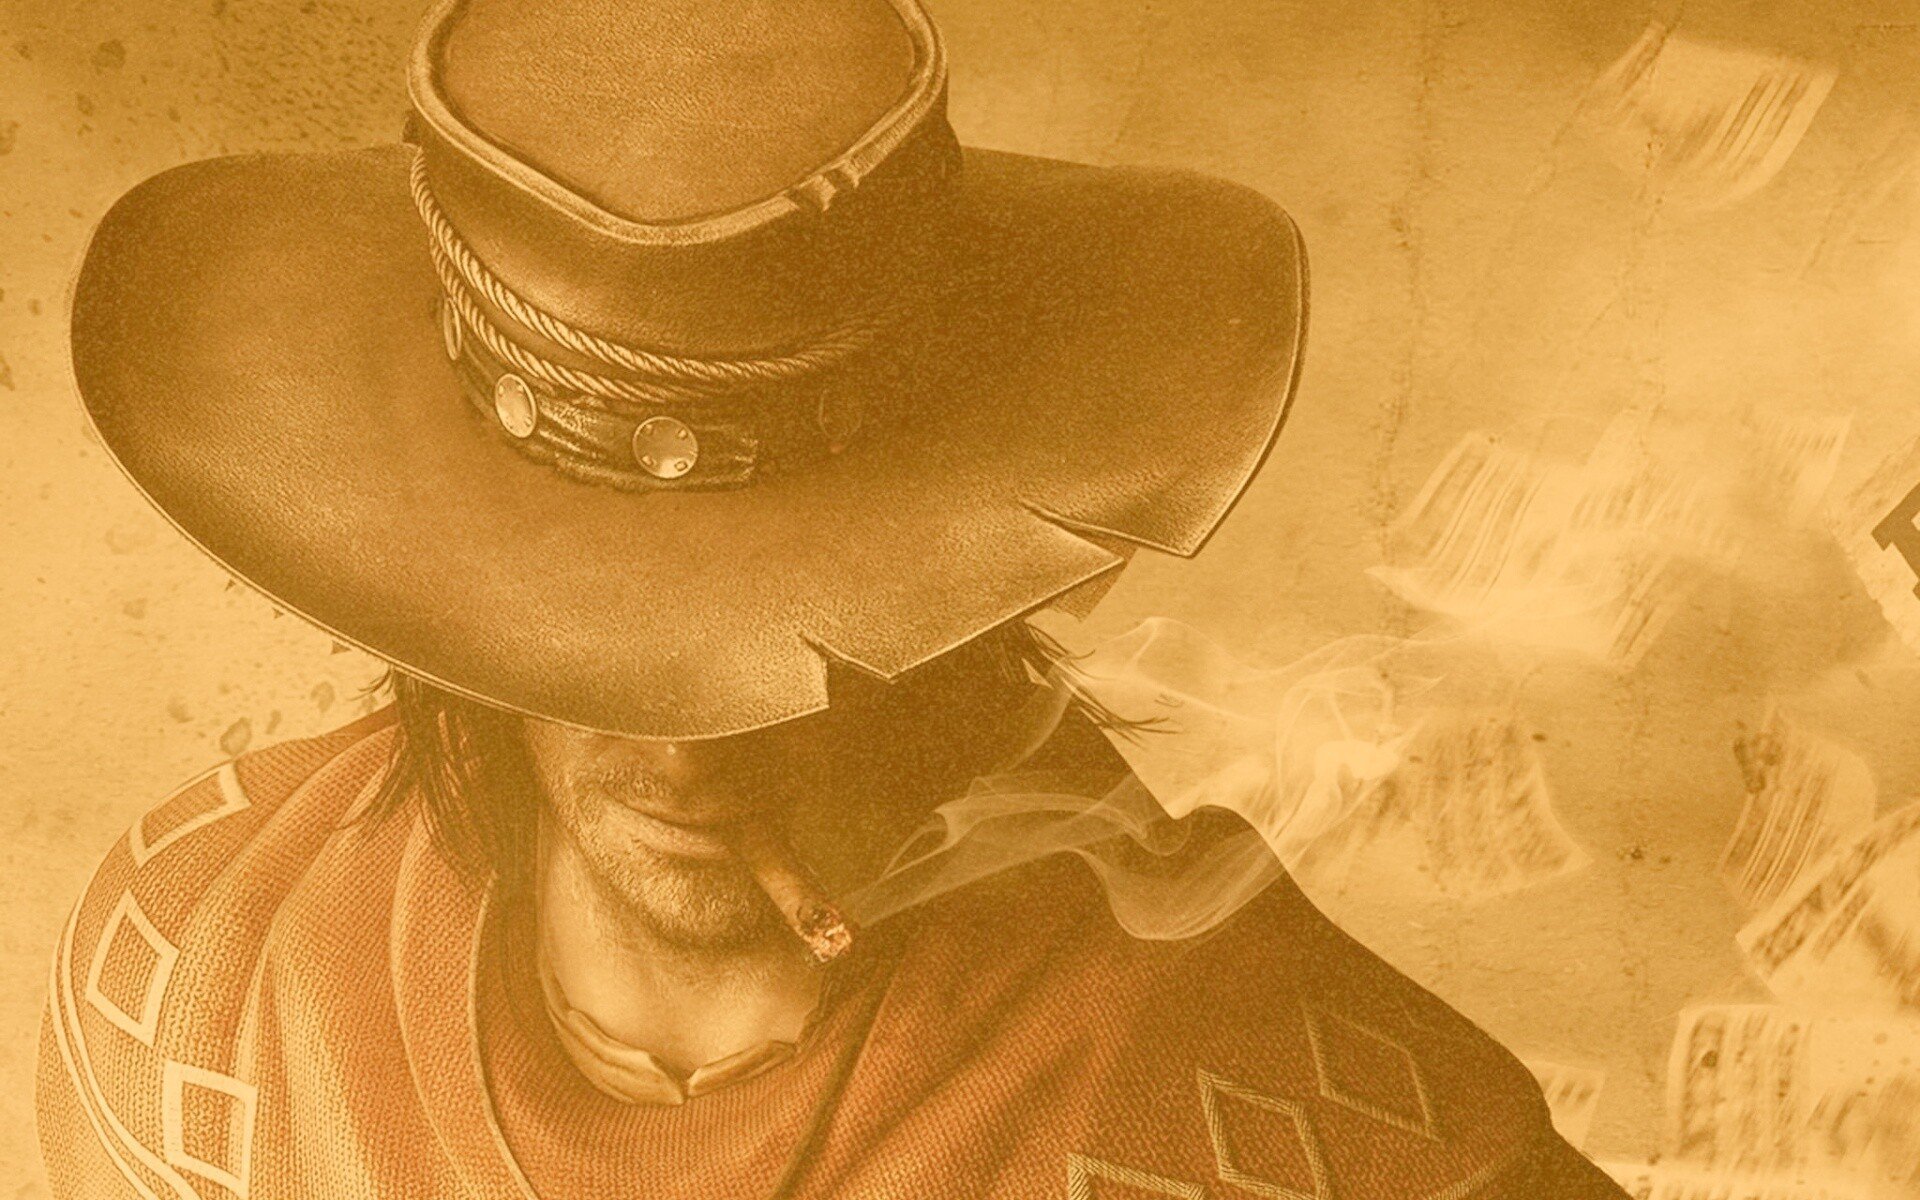 Ава ковбой наггетс. "Шляпа и пистолеть" (David Lapham). Мужчина в шляпе арт. Аватар мужчина в шляпе.